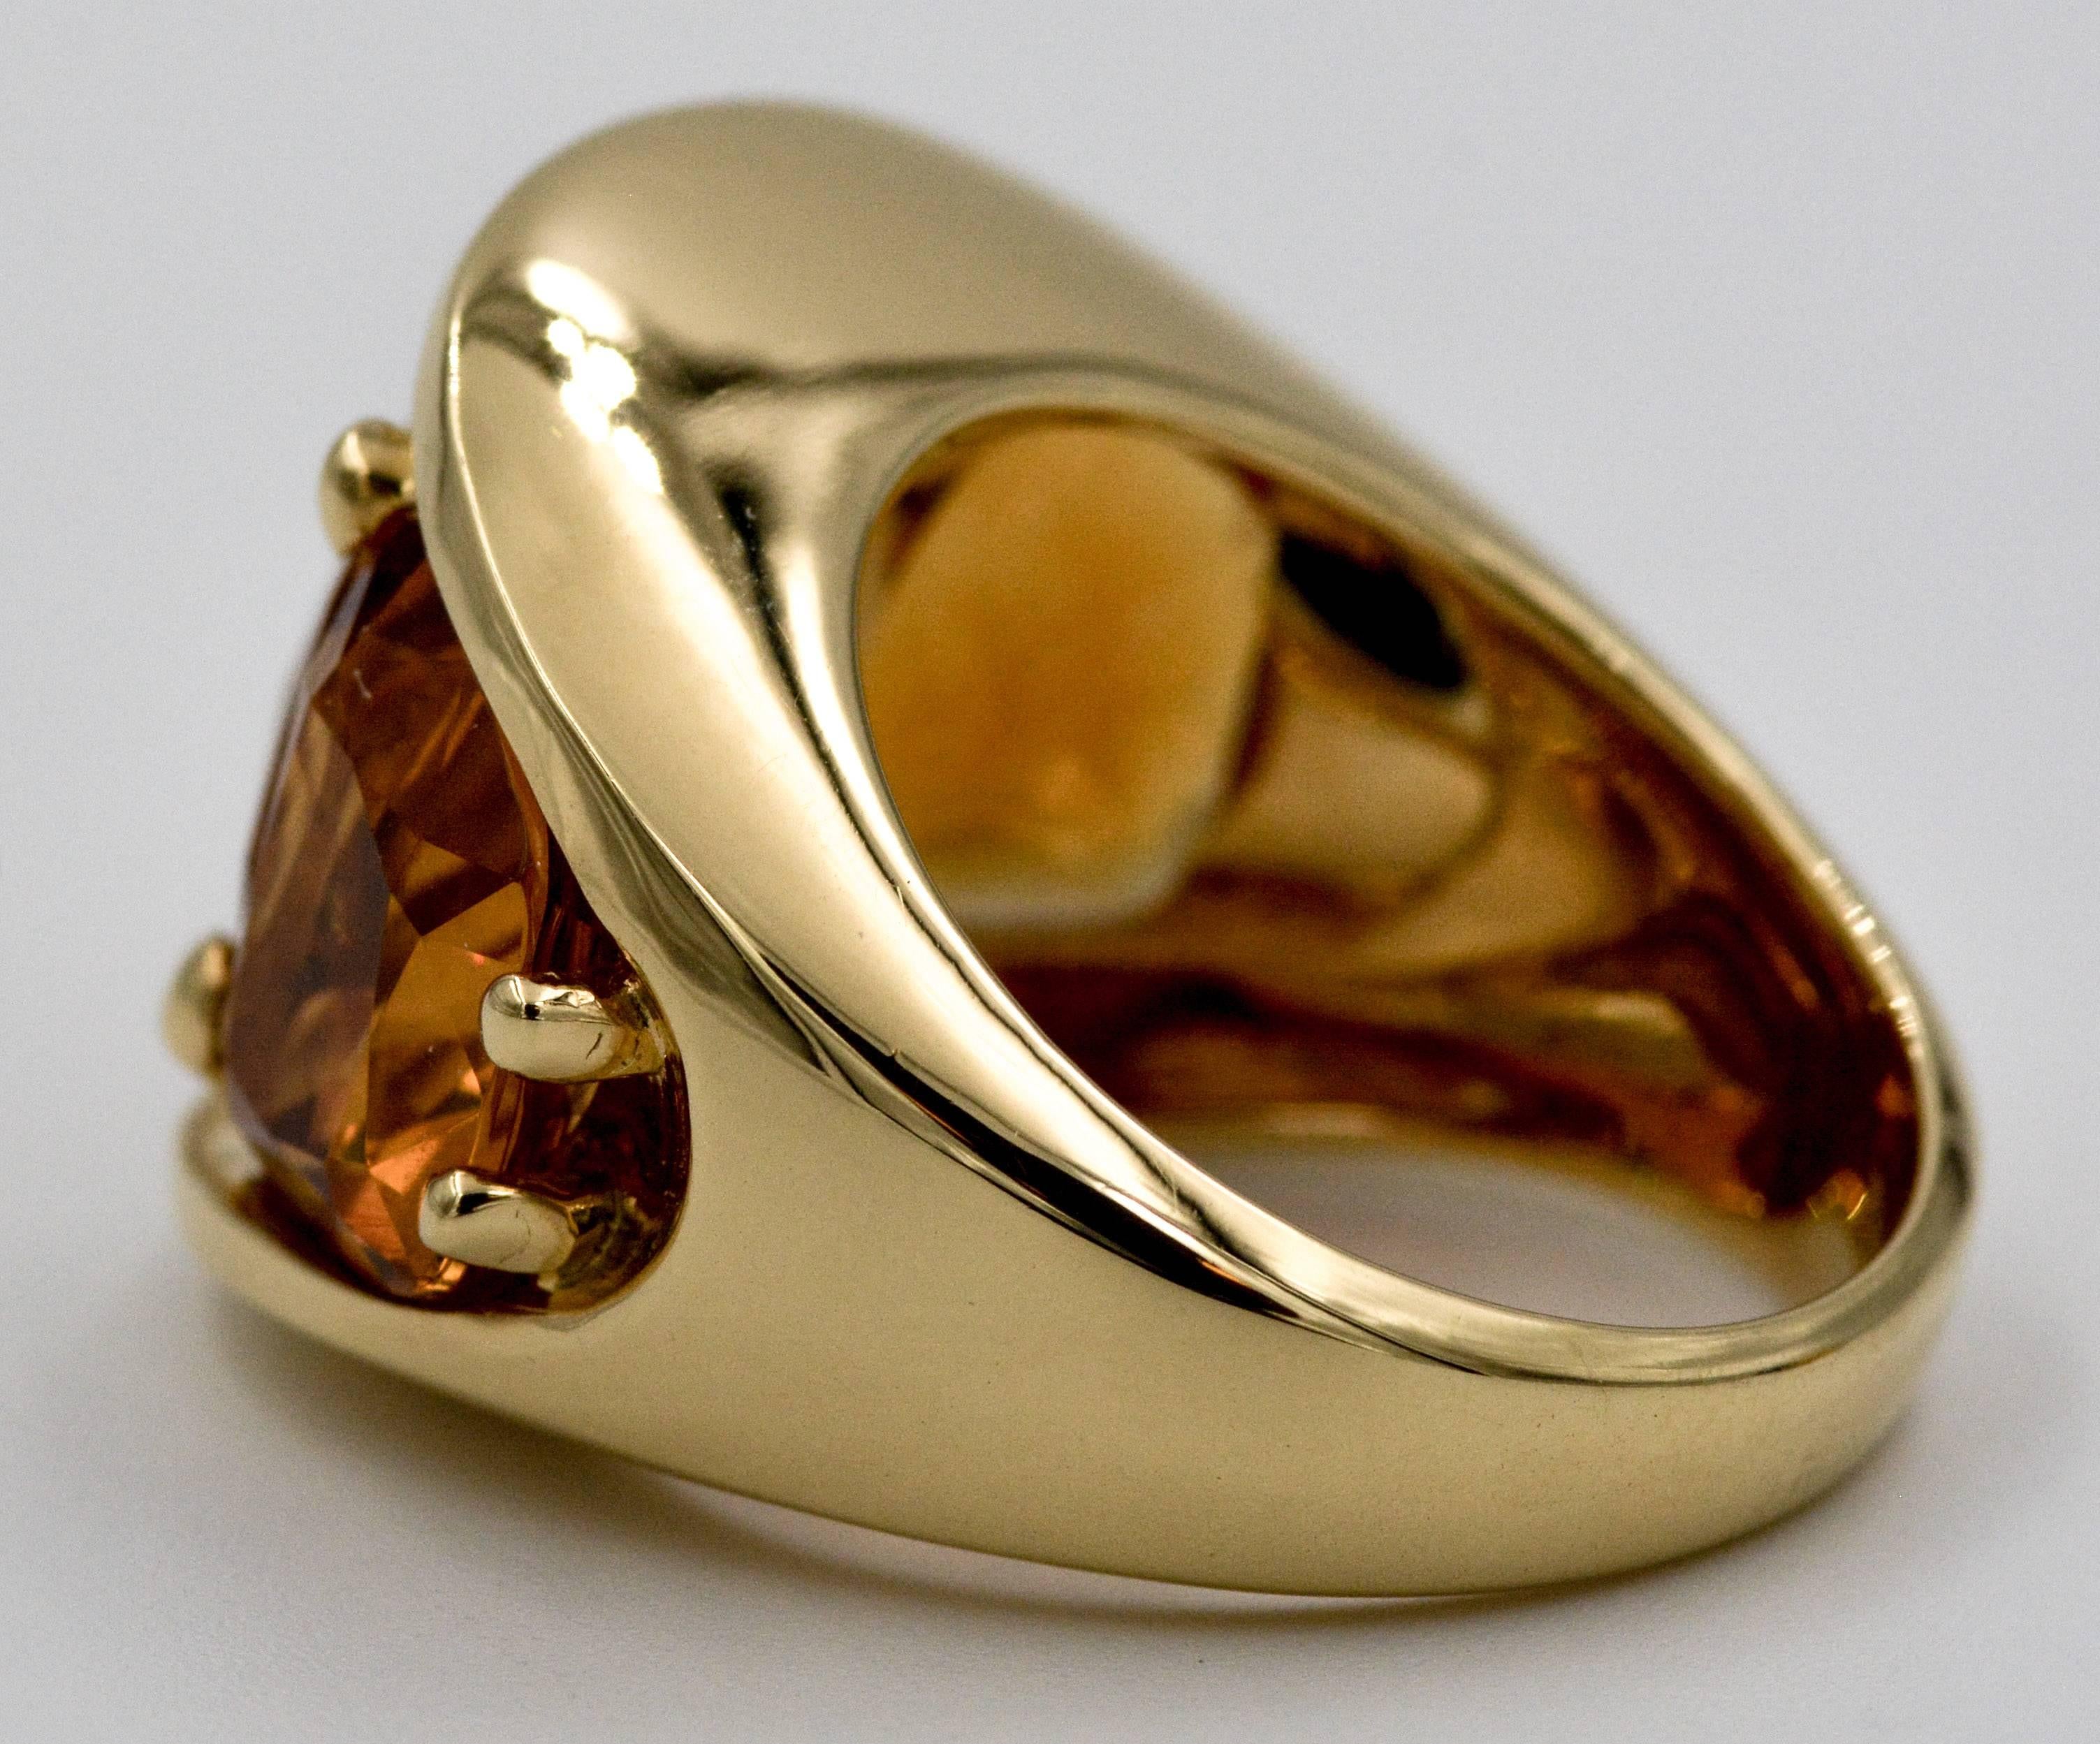 Seaman Schepps 485 Park Avenue Collection Citrine Gold Ring 2